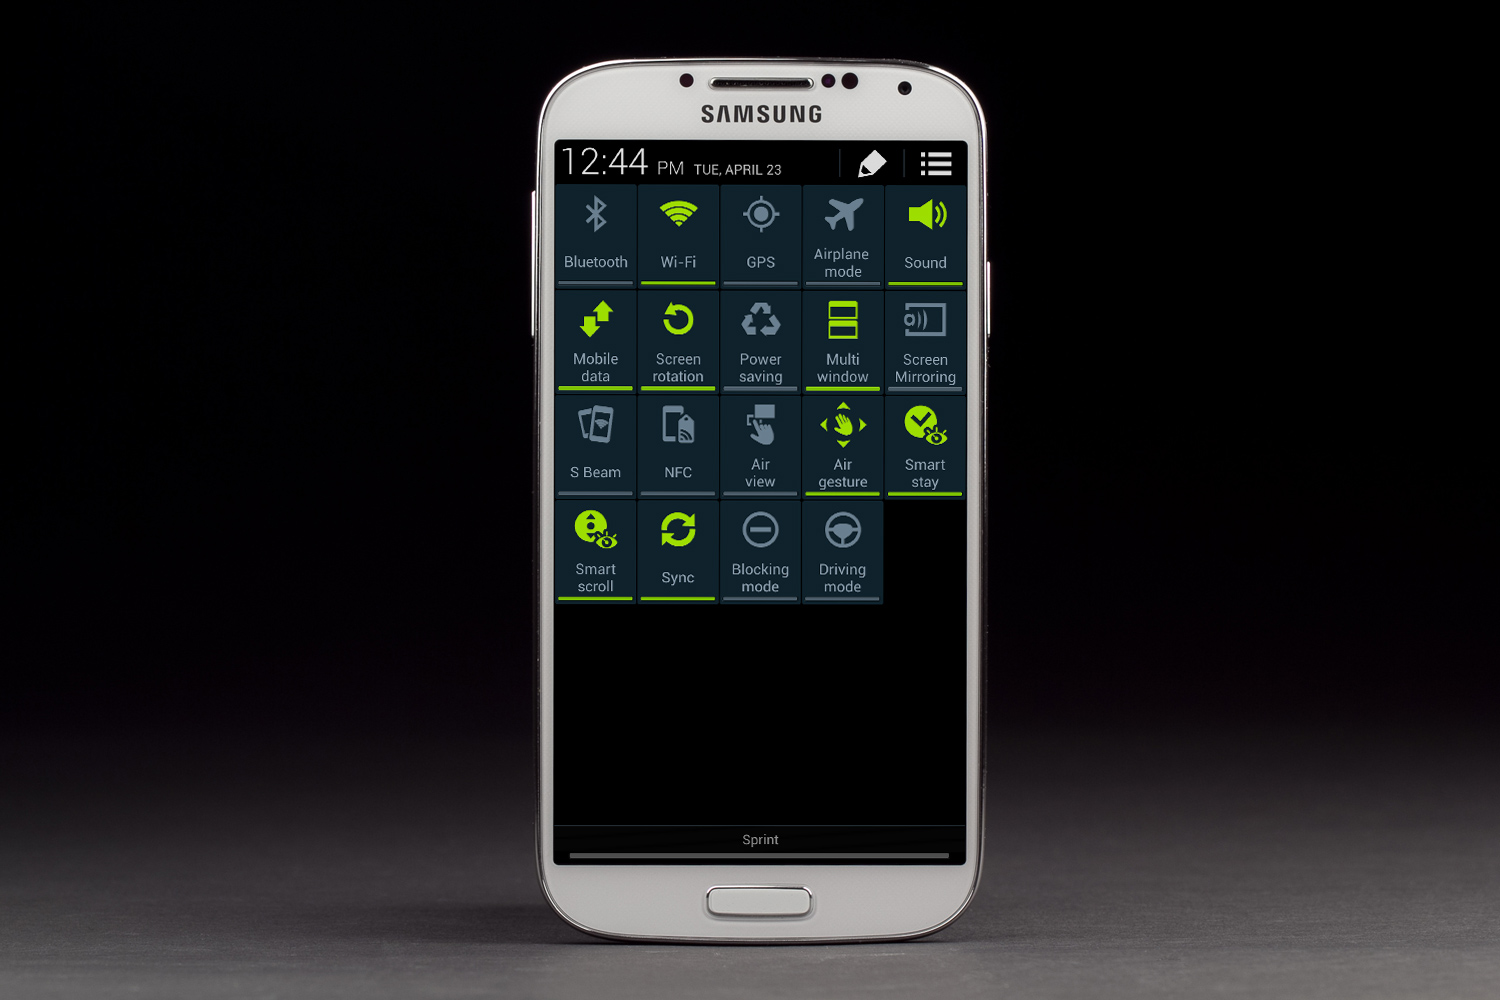  Daftar Harga Handphone (HP) Android Samsung Terbaru Juli 2013